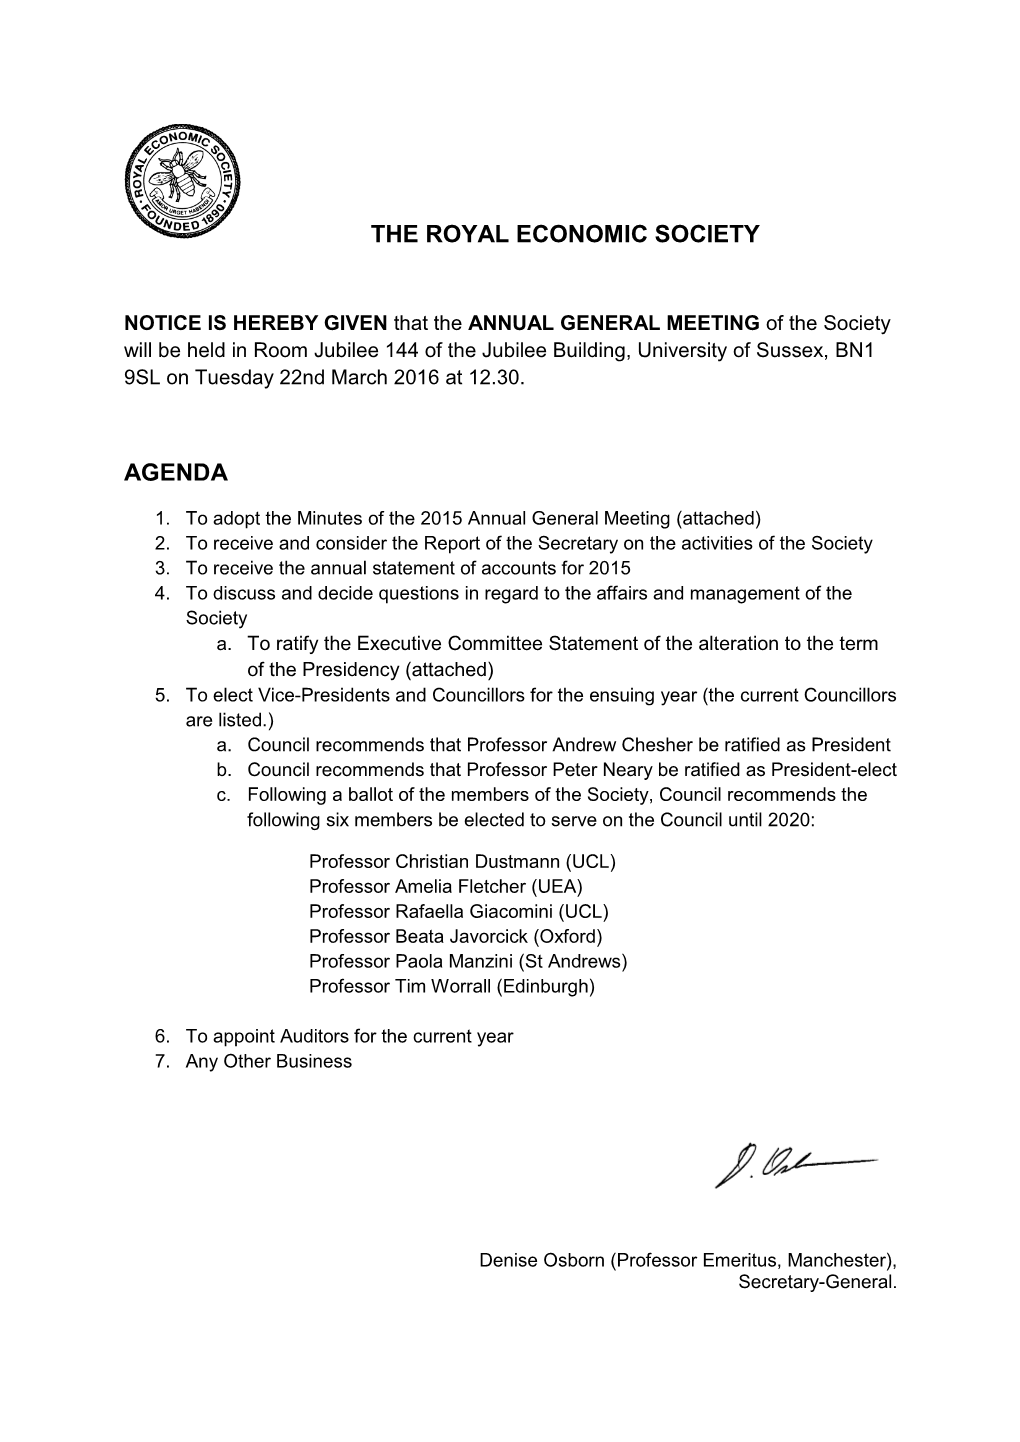 The Royal Economic Society Agenda